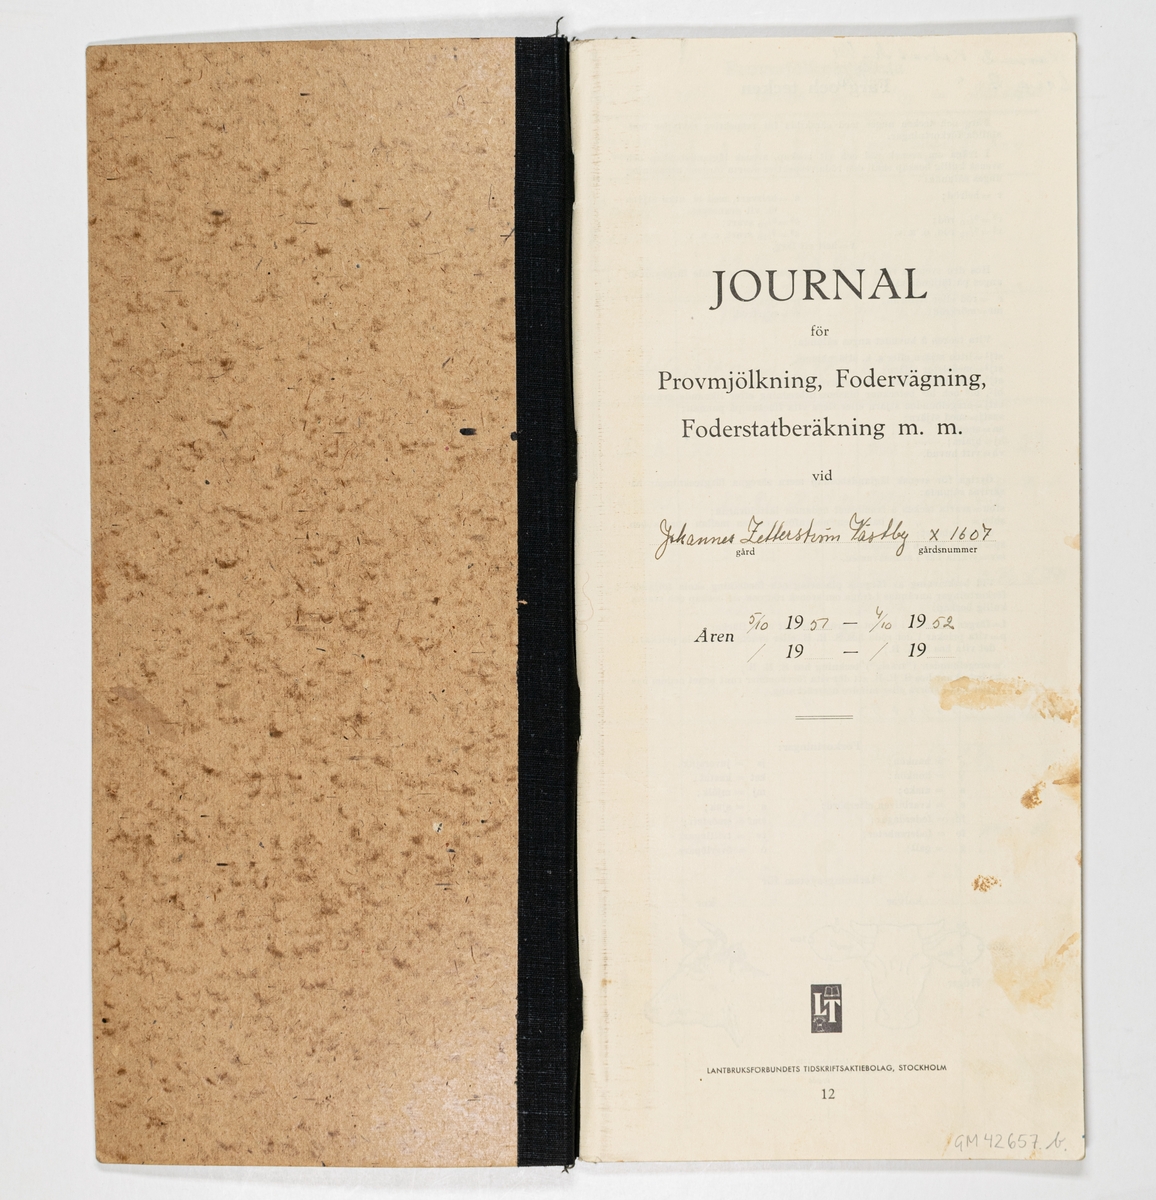 Mjölkjournal med inskrivet resultat för provmjölkning från åren 1951-1952.
Hård pärm av rå pressad papp. Svart textilrygg. Förtryckta sidor.